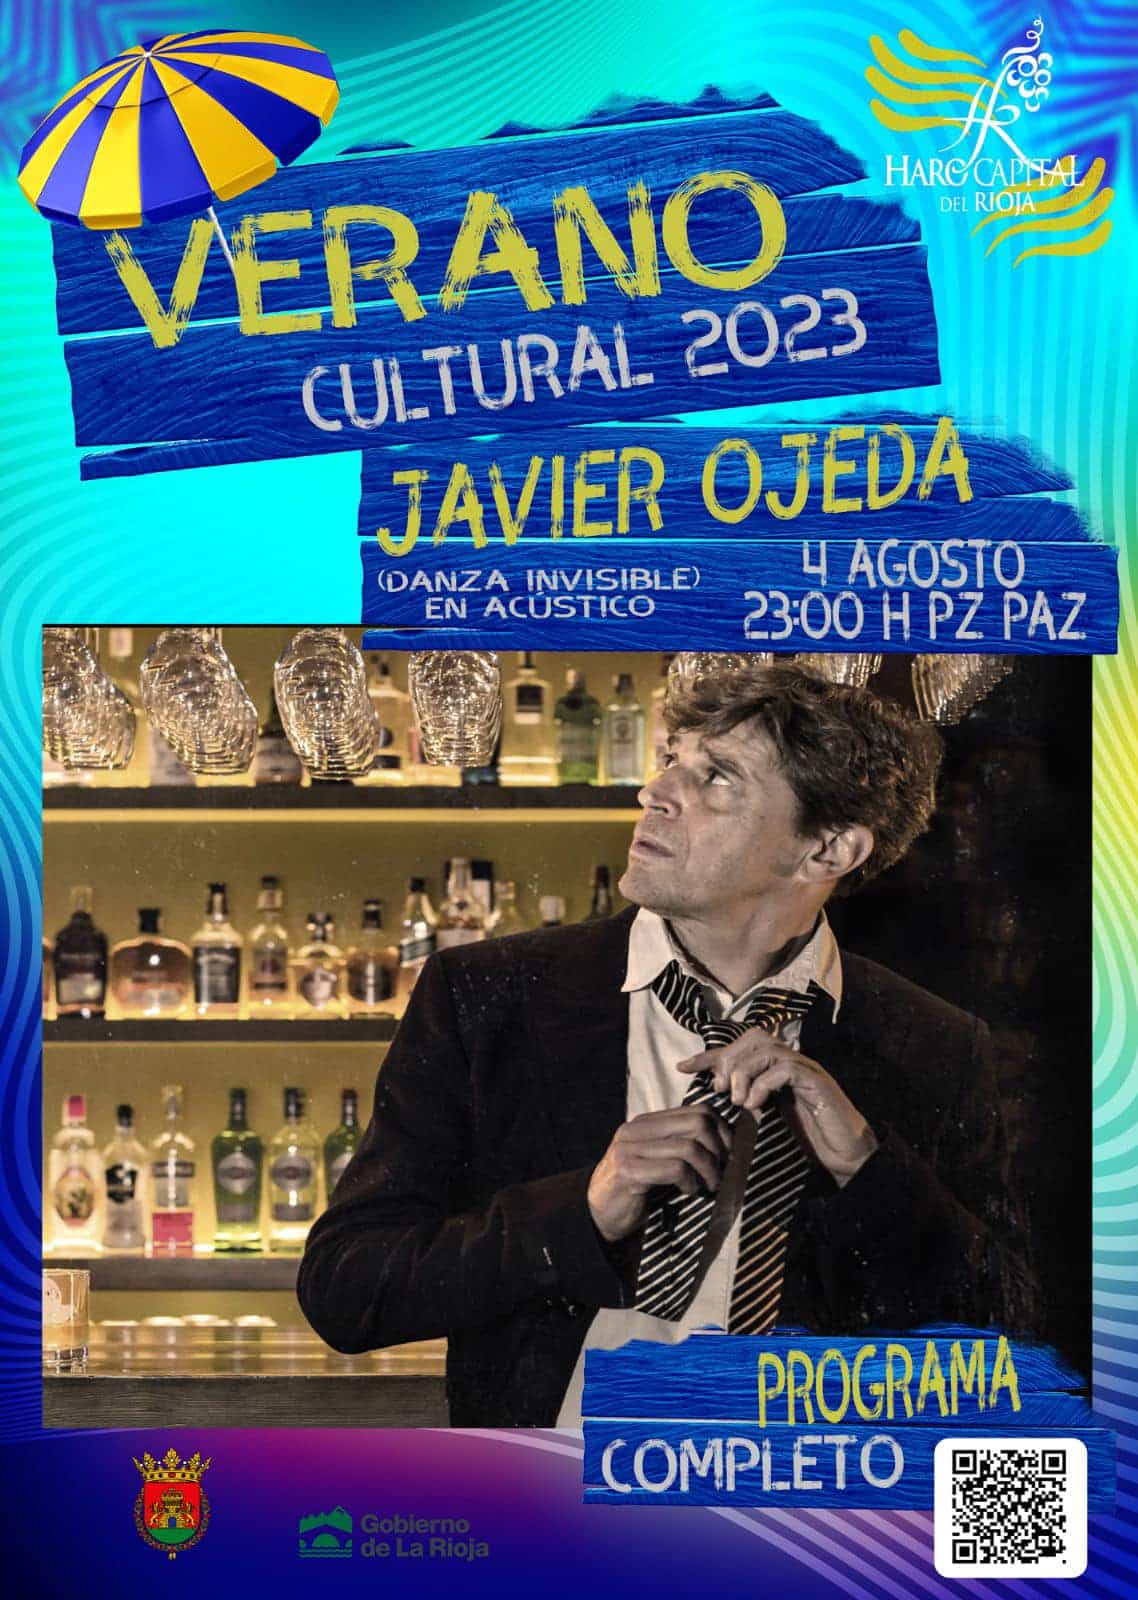 Ronda Clásica y concierto de Javier Ojeda este viernes en Haro 2